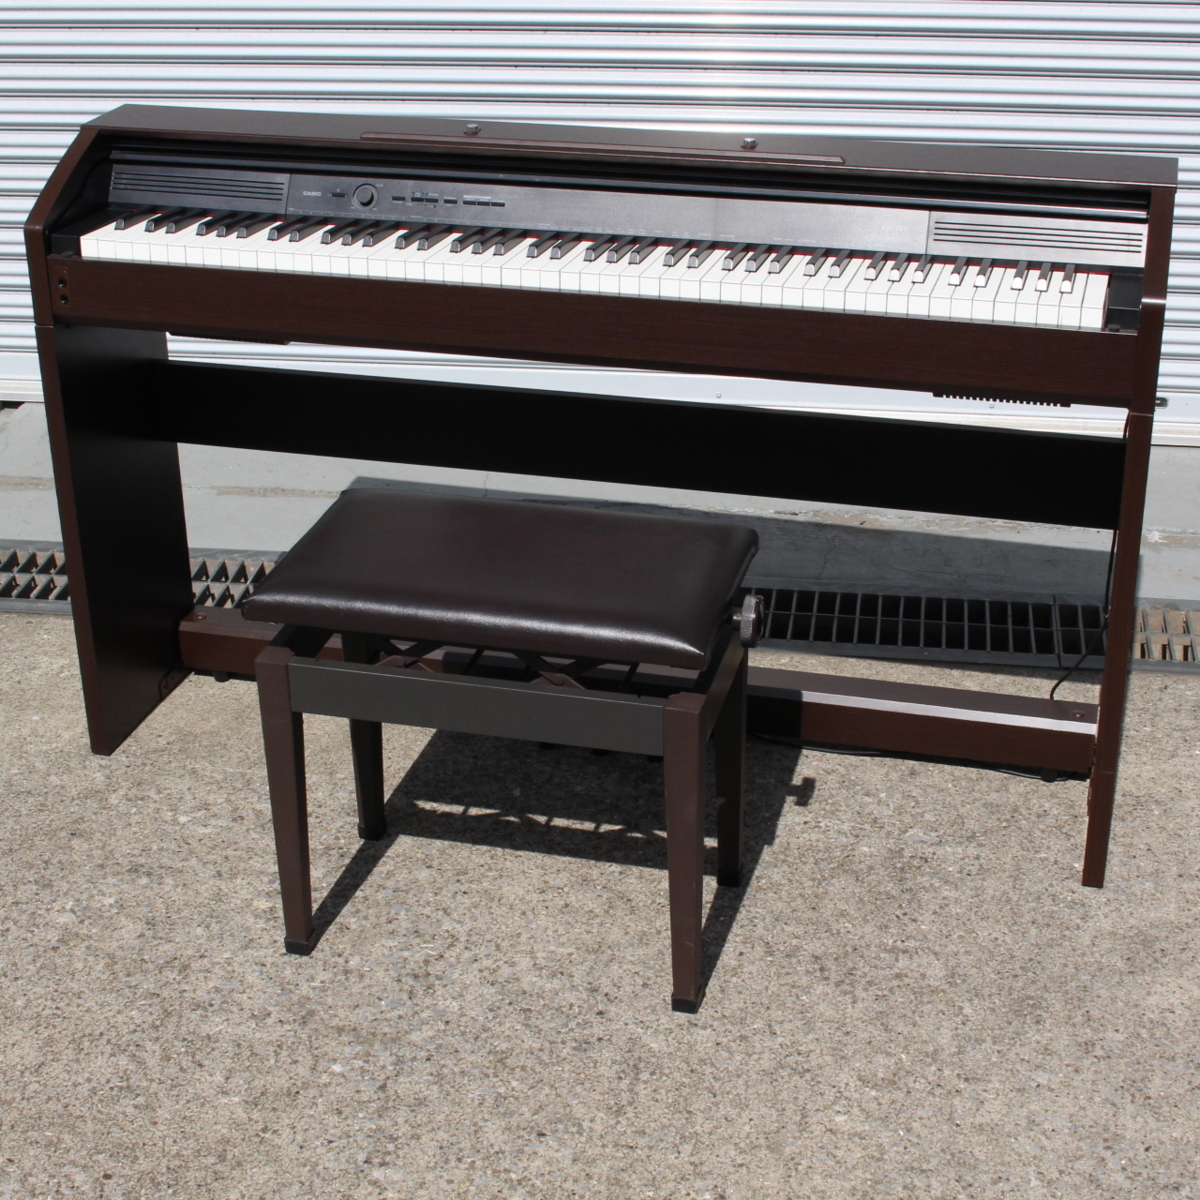 CASIO 電子ピアノ PX-750 椅子付き 2013年製 カシオ